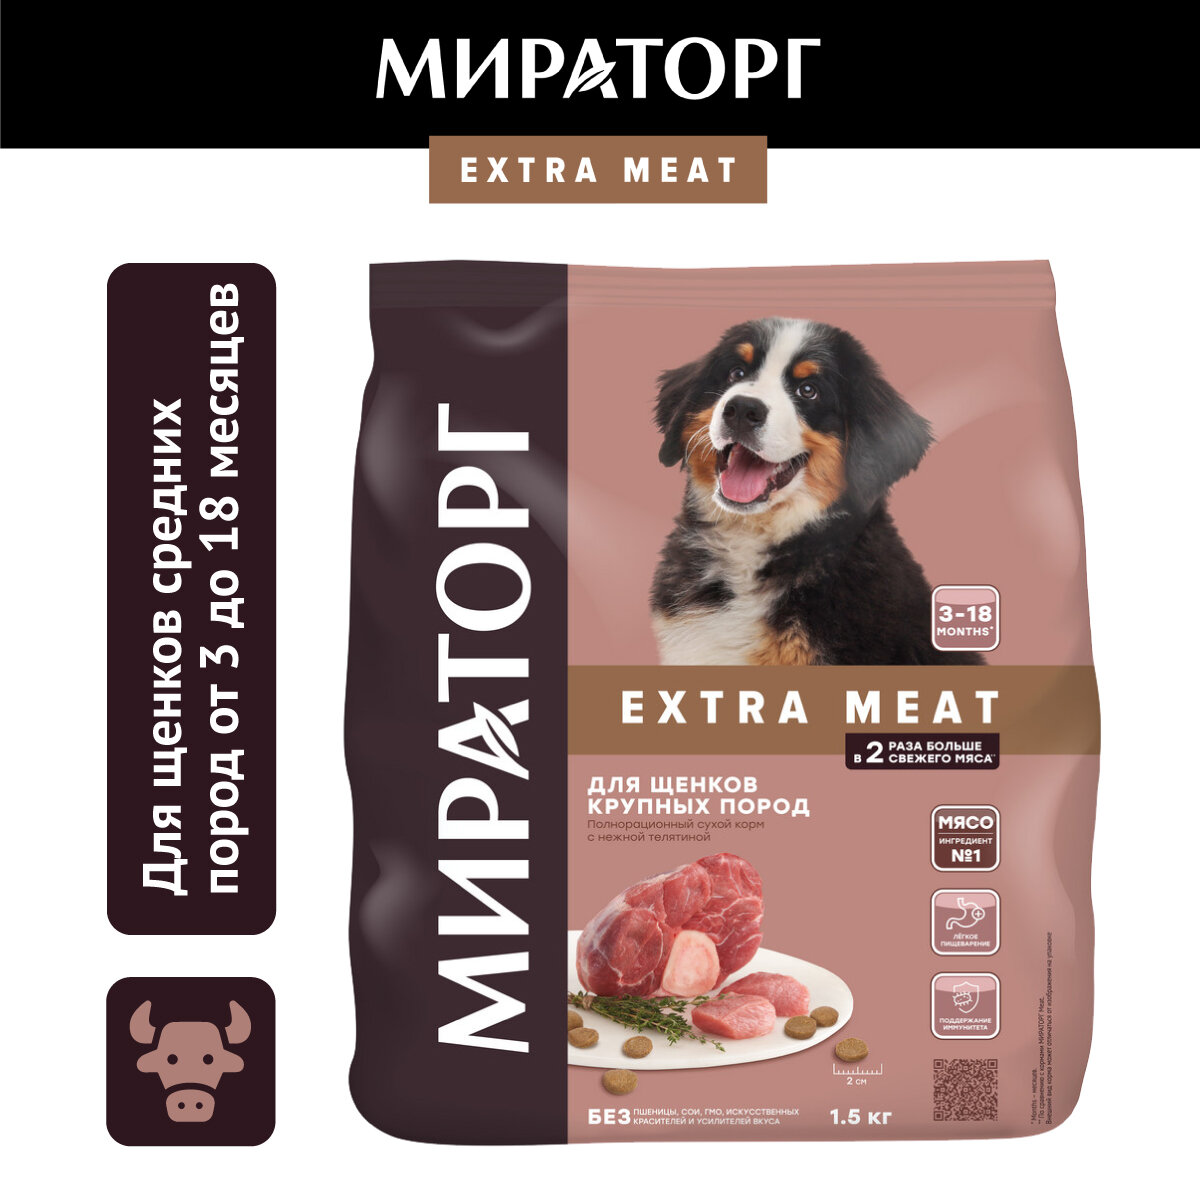 Сухой корм для собак Мираторг EXTRA MEAT c нежной телятиной для щенков крупных пород